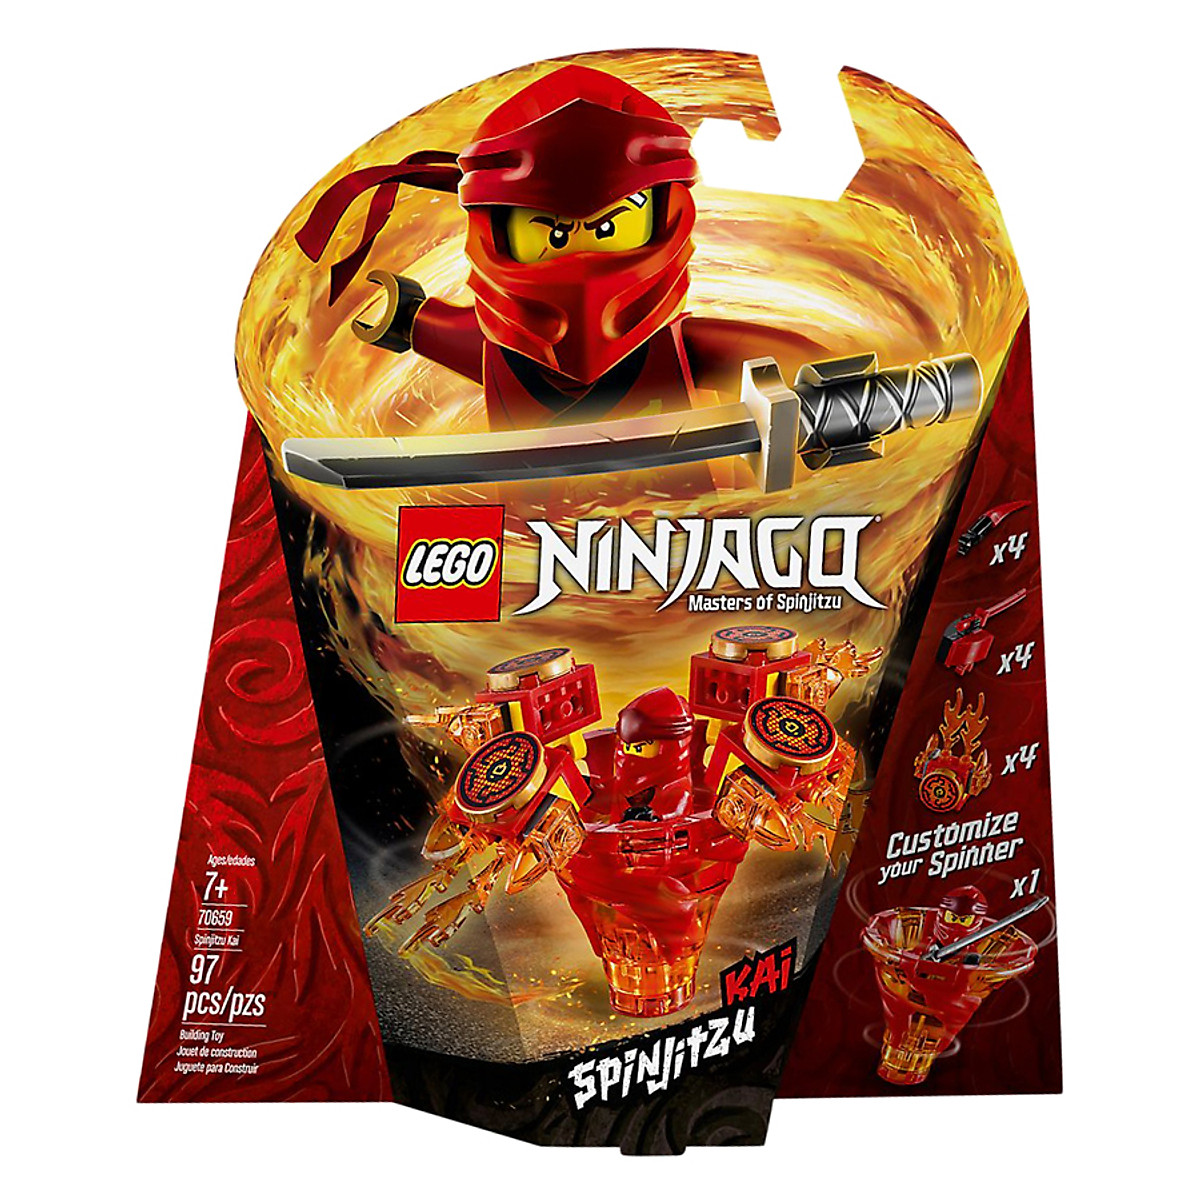 Mô hình Lego Ninjago - Hình ảnh về mô hình Lego Ninjago mở rộng trí tưởng tượng và sáng tạo của bạn. Những chú rồng, ninja, và những bộ phận khác mang tính khoa học giúp bạn tạo ra những tác phẩm Lego độc đáo và đầy màu sắc.